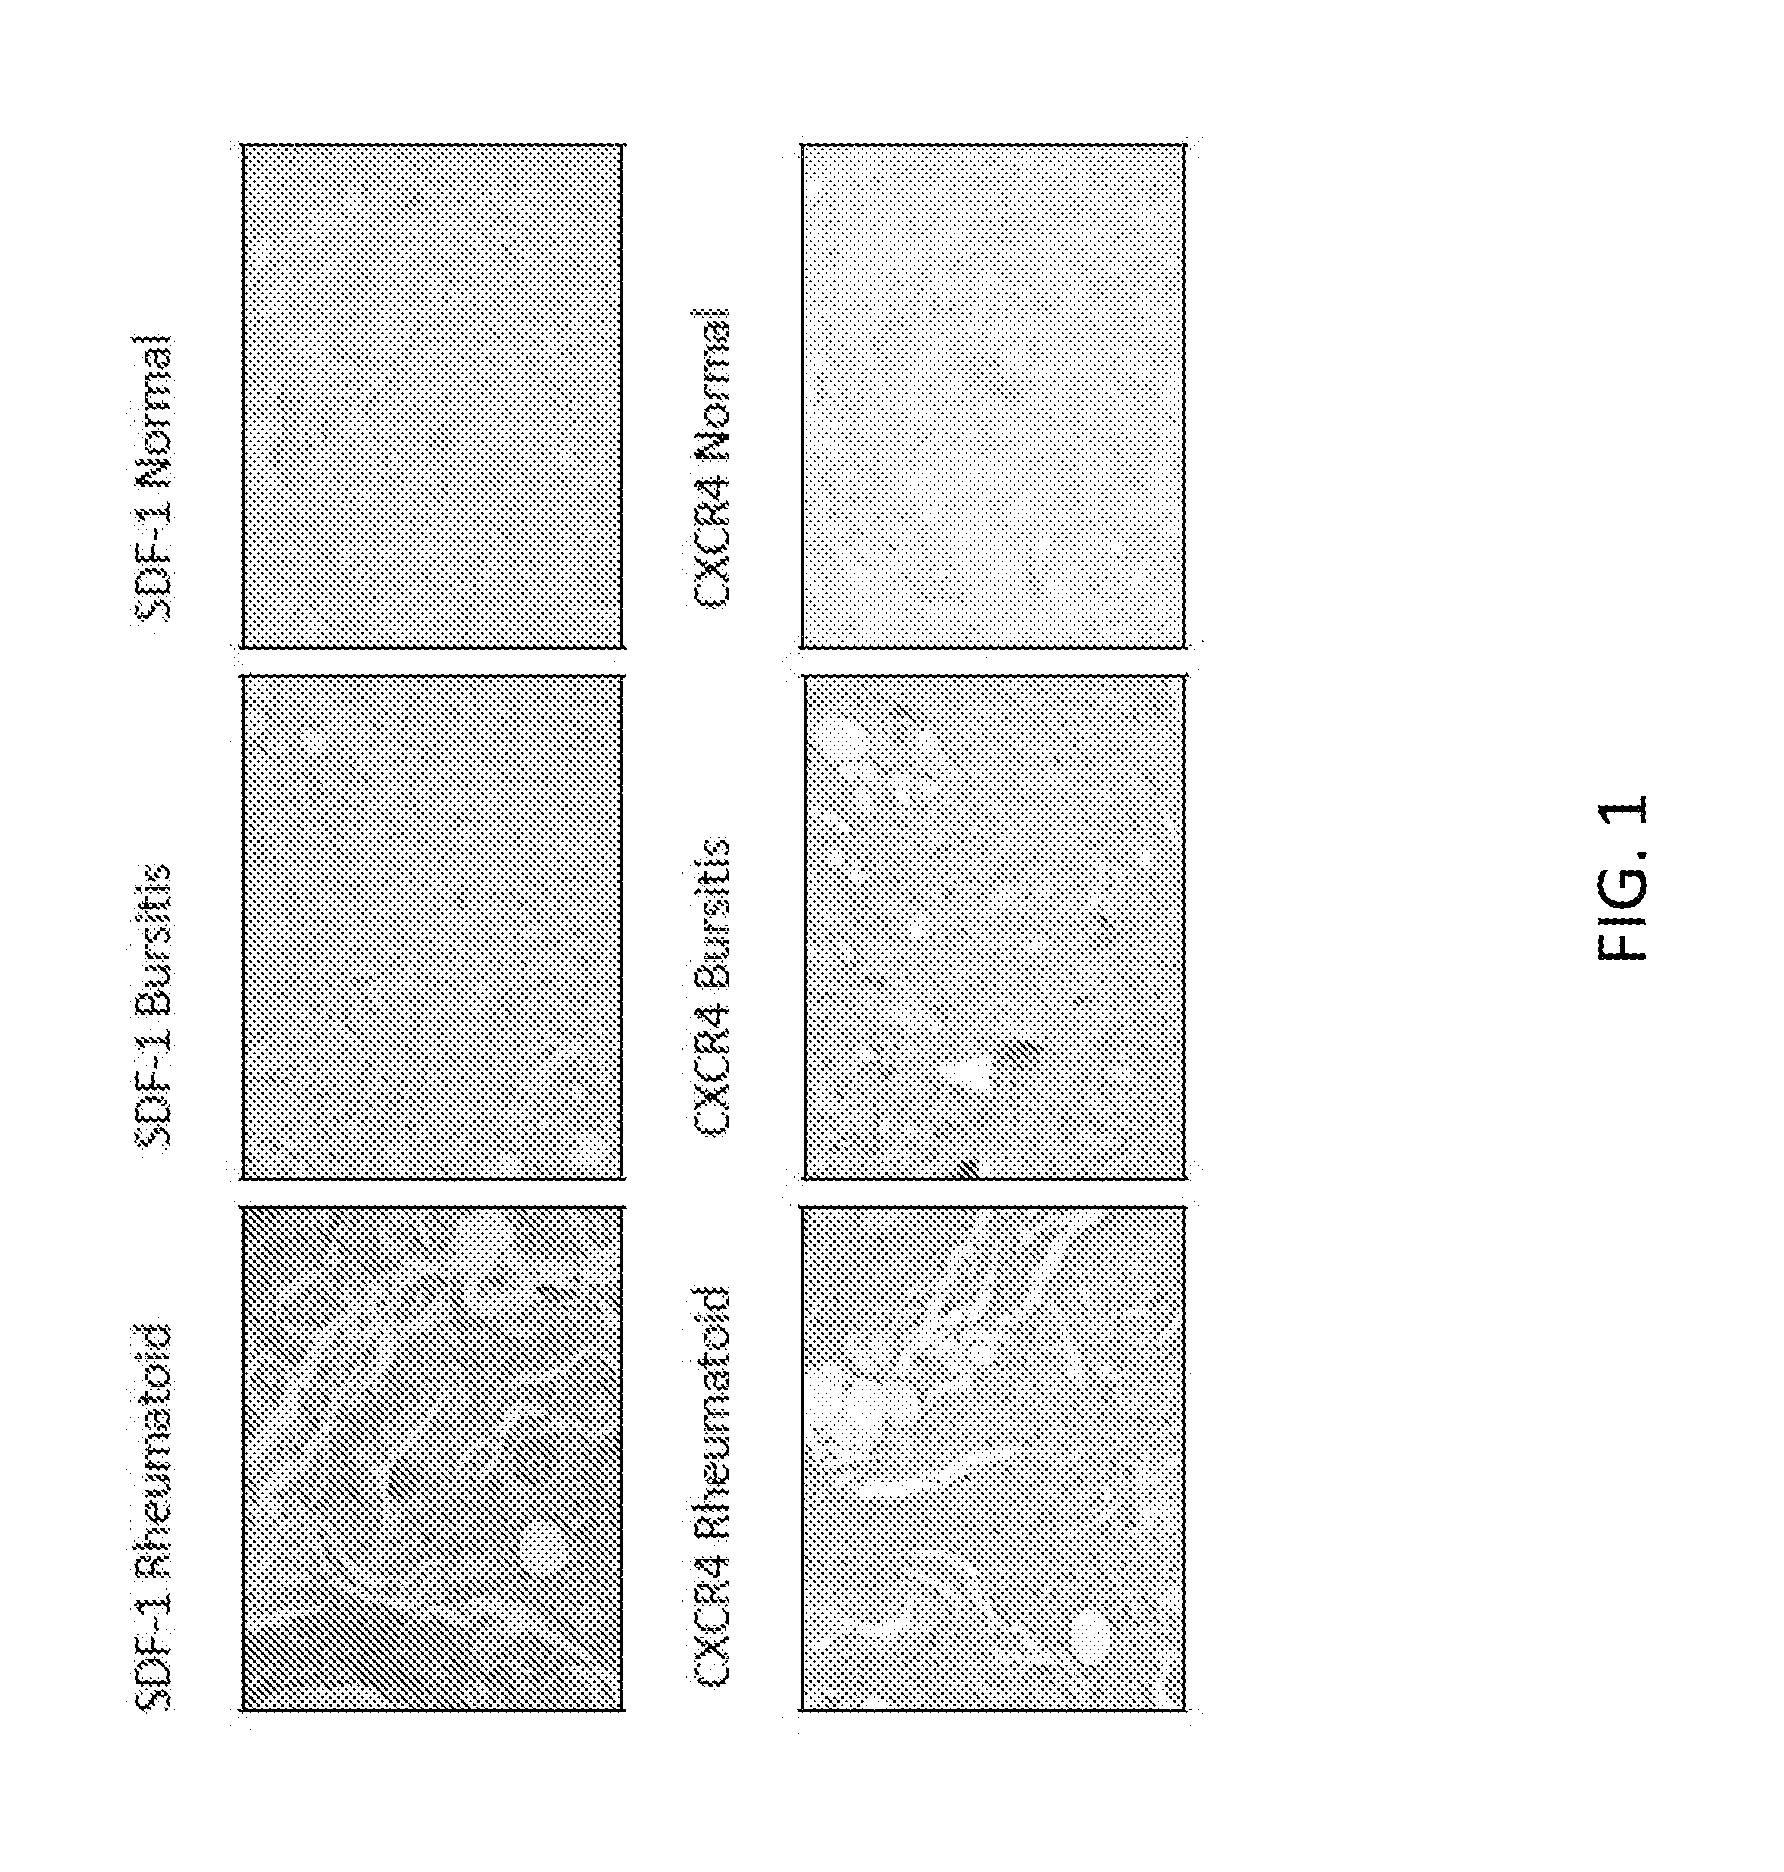 Stromal Derived Factor Inhibition And CXCR4 Blockade